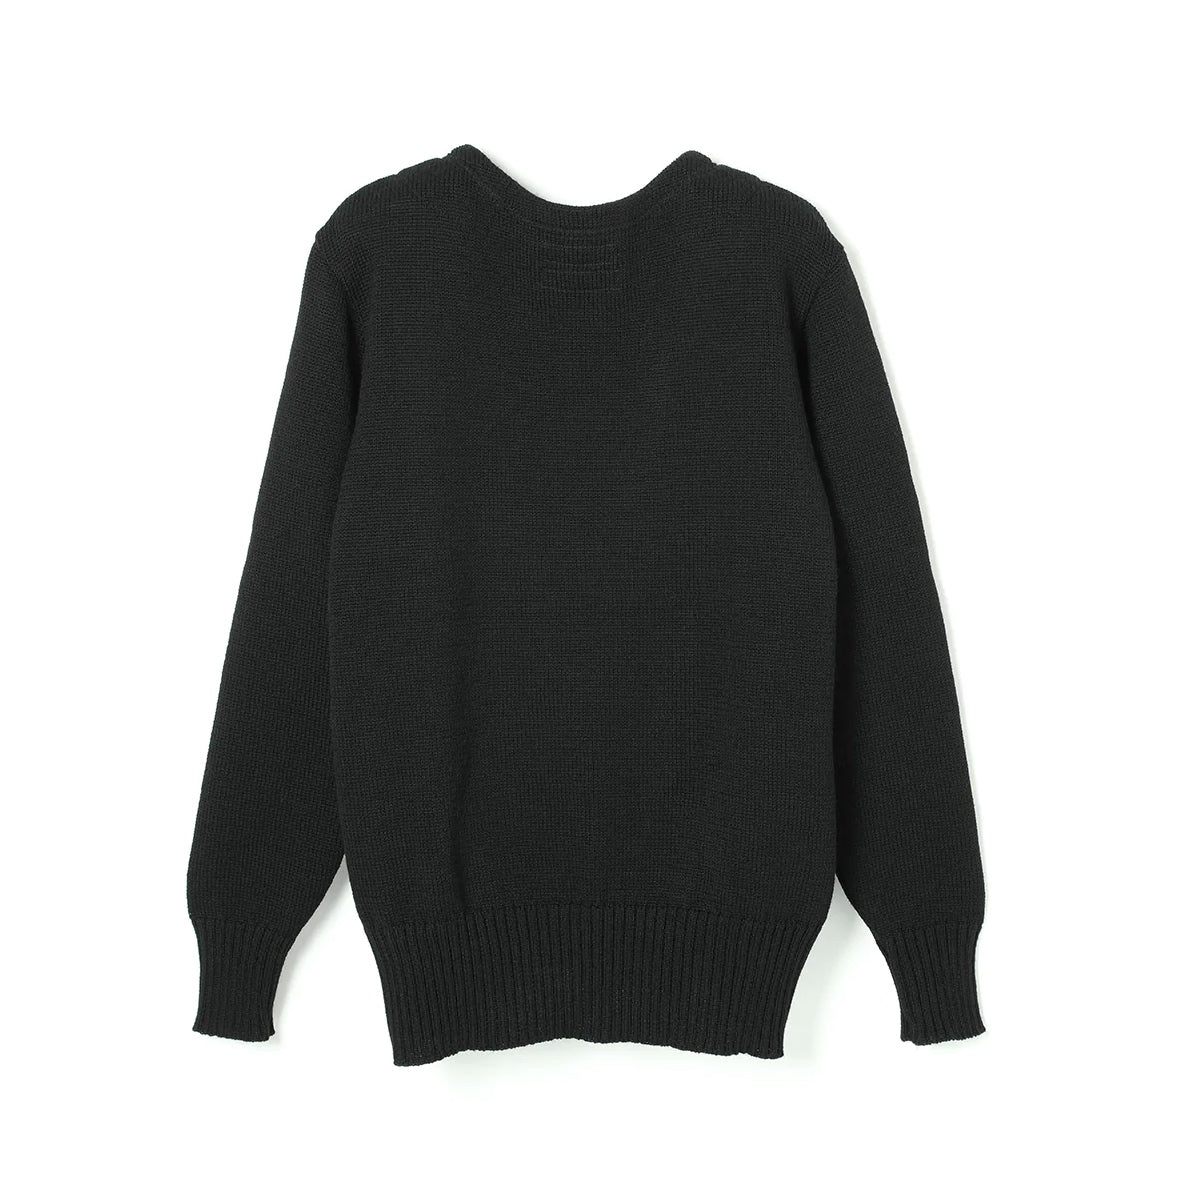 WearMasters - Lot.725 Boat Neck Sweater (Black)